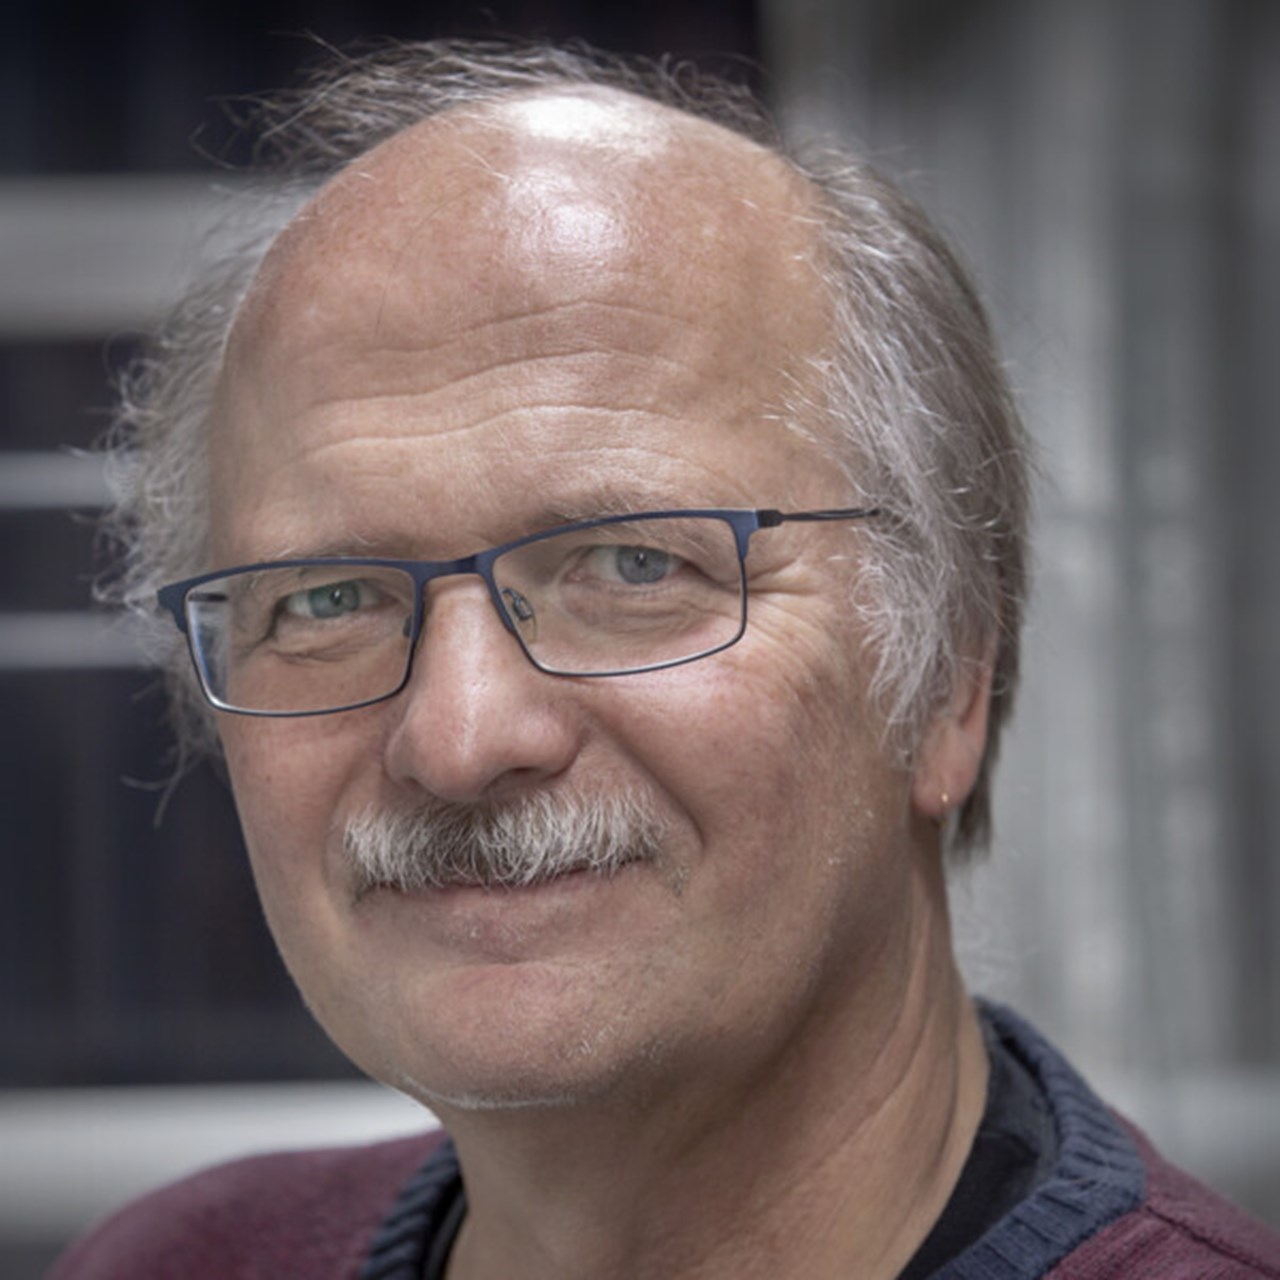 Porträtt på Stefan Jansson, Anknuten som professor vid Institutionen för fysiologisk botanik, Umeå universitet.